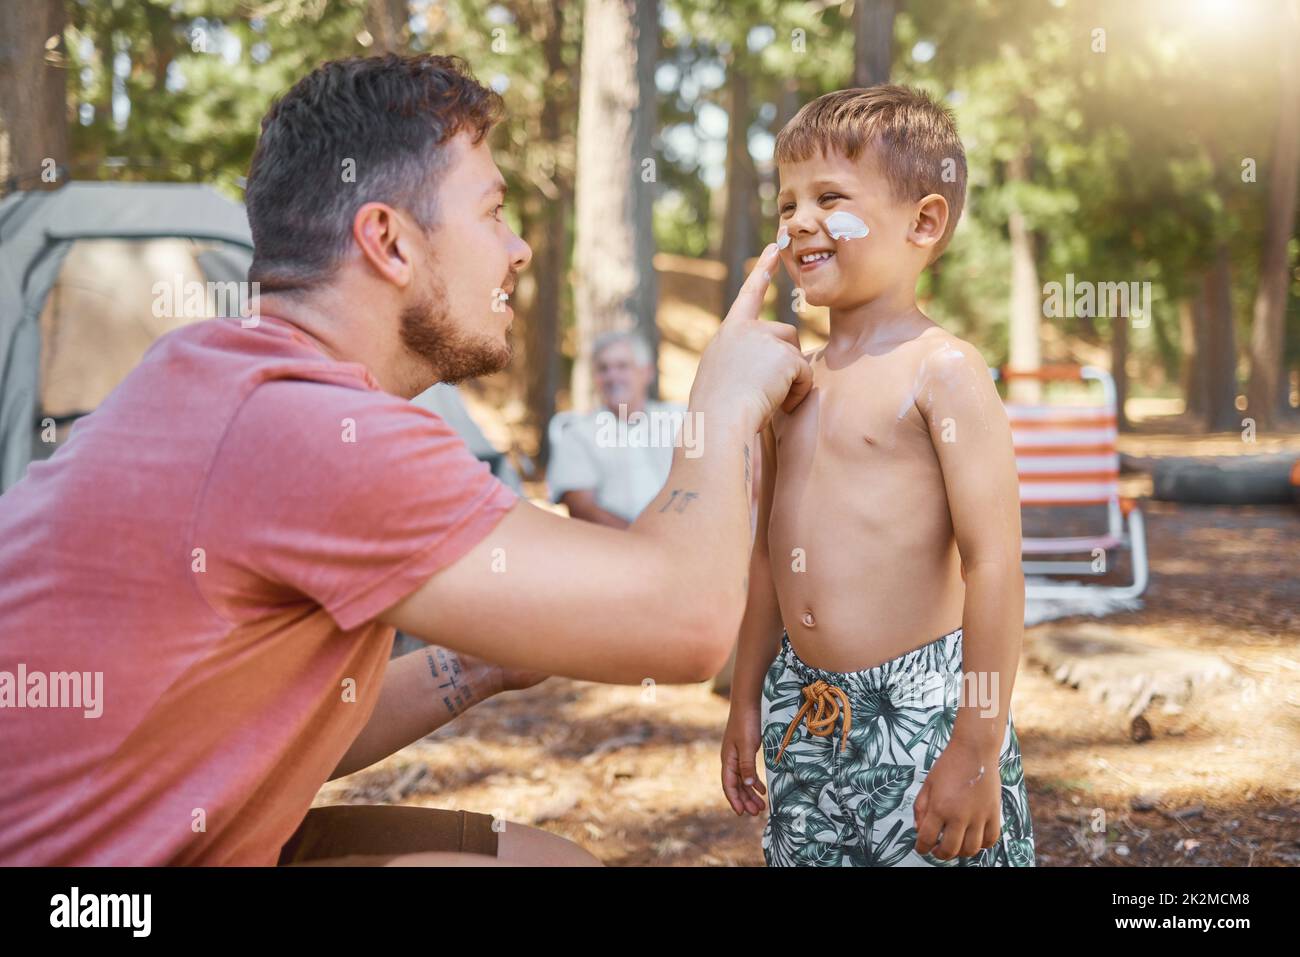 Non dimenticare la crema solare. Scatto corto di un bel giovane uomo che mette la crema solare sul suo adorabile figliolo mentre si accampano nei boschi. Foto Stock